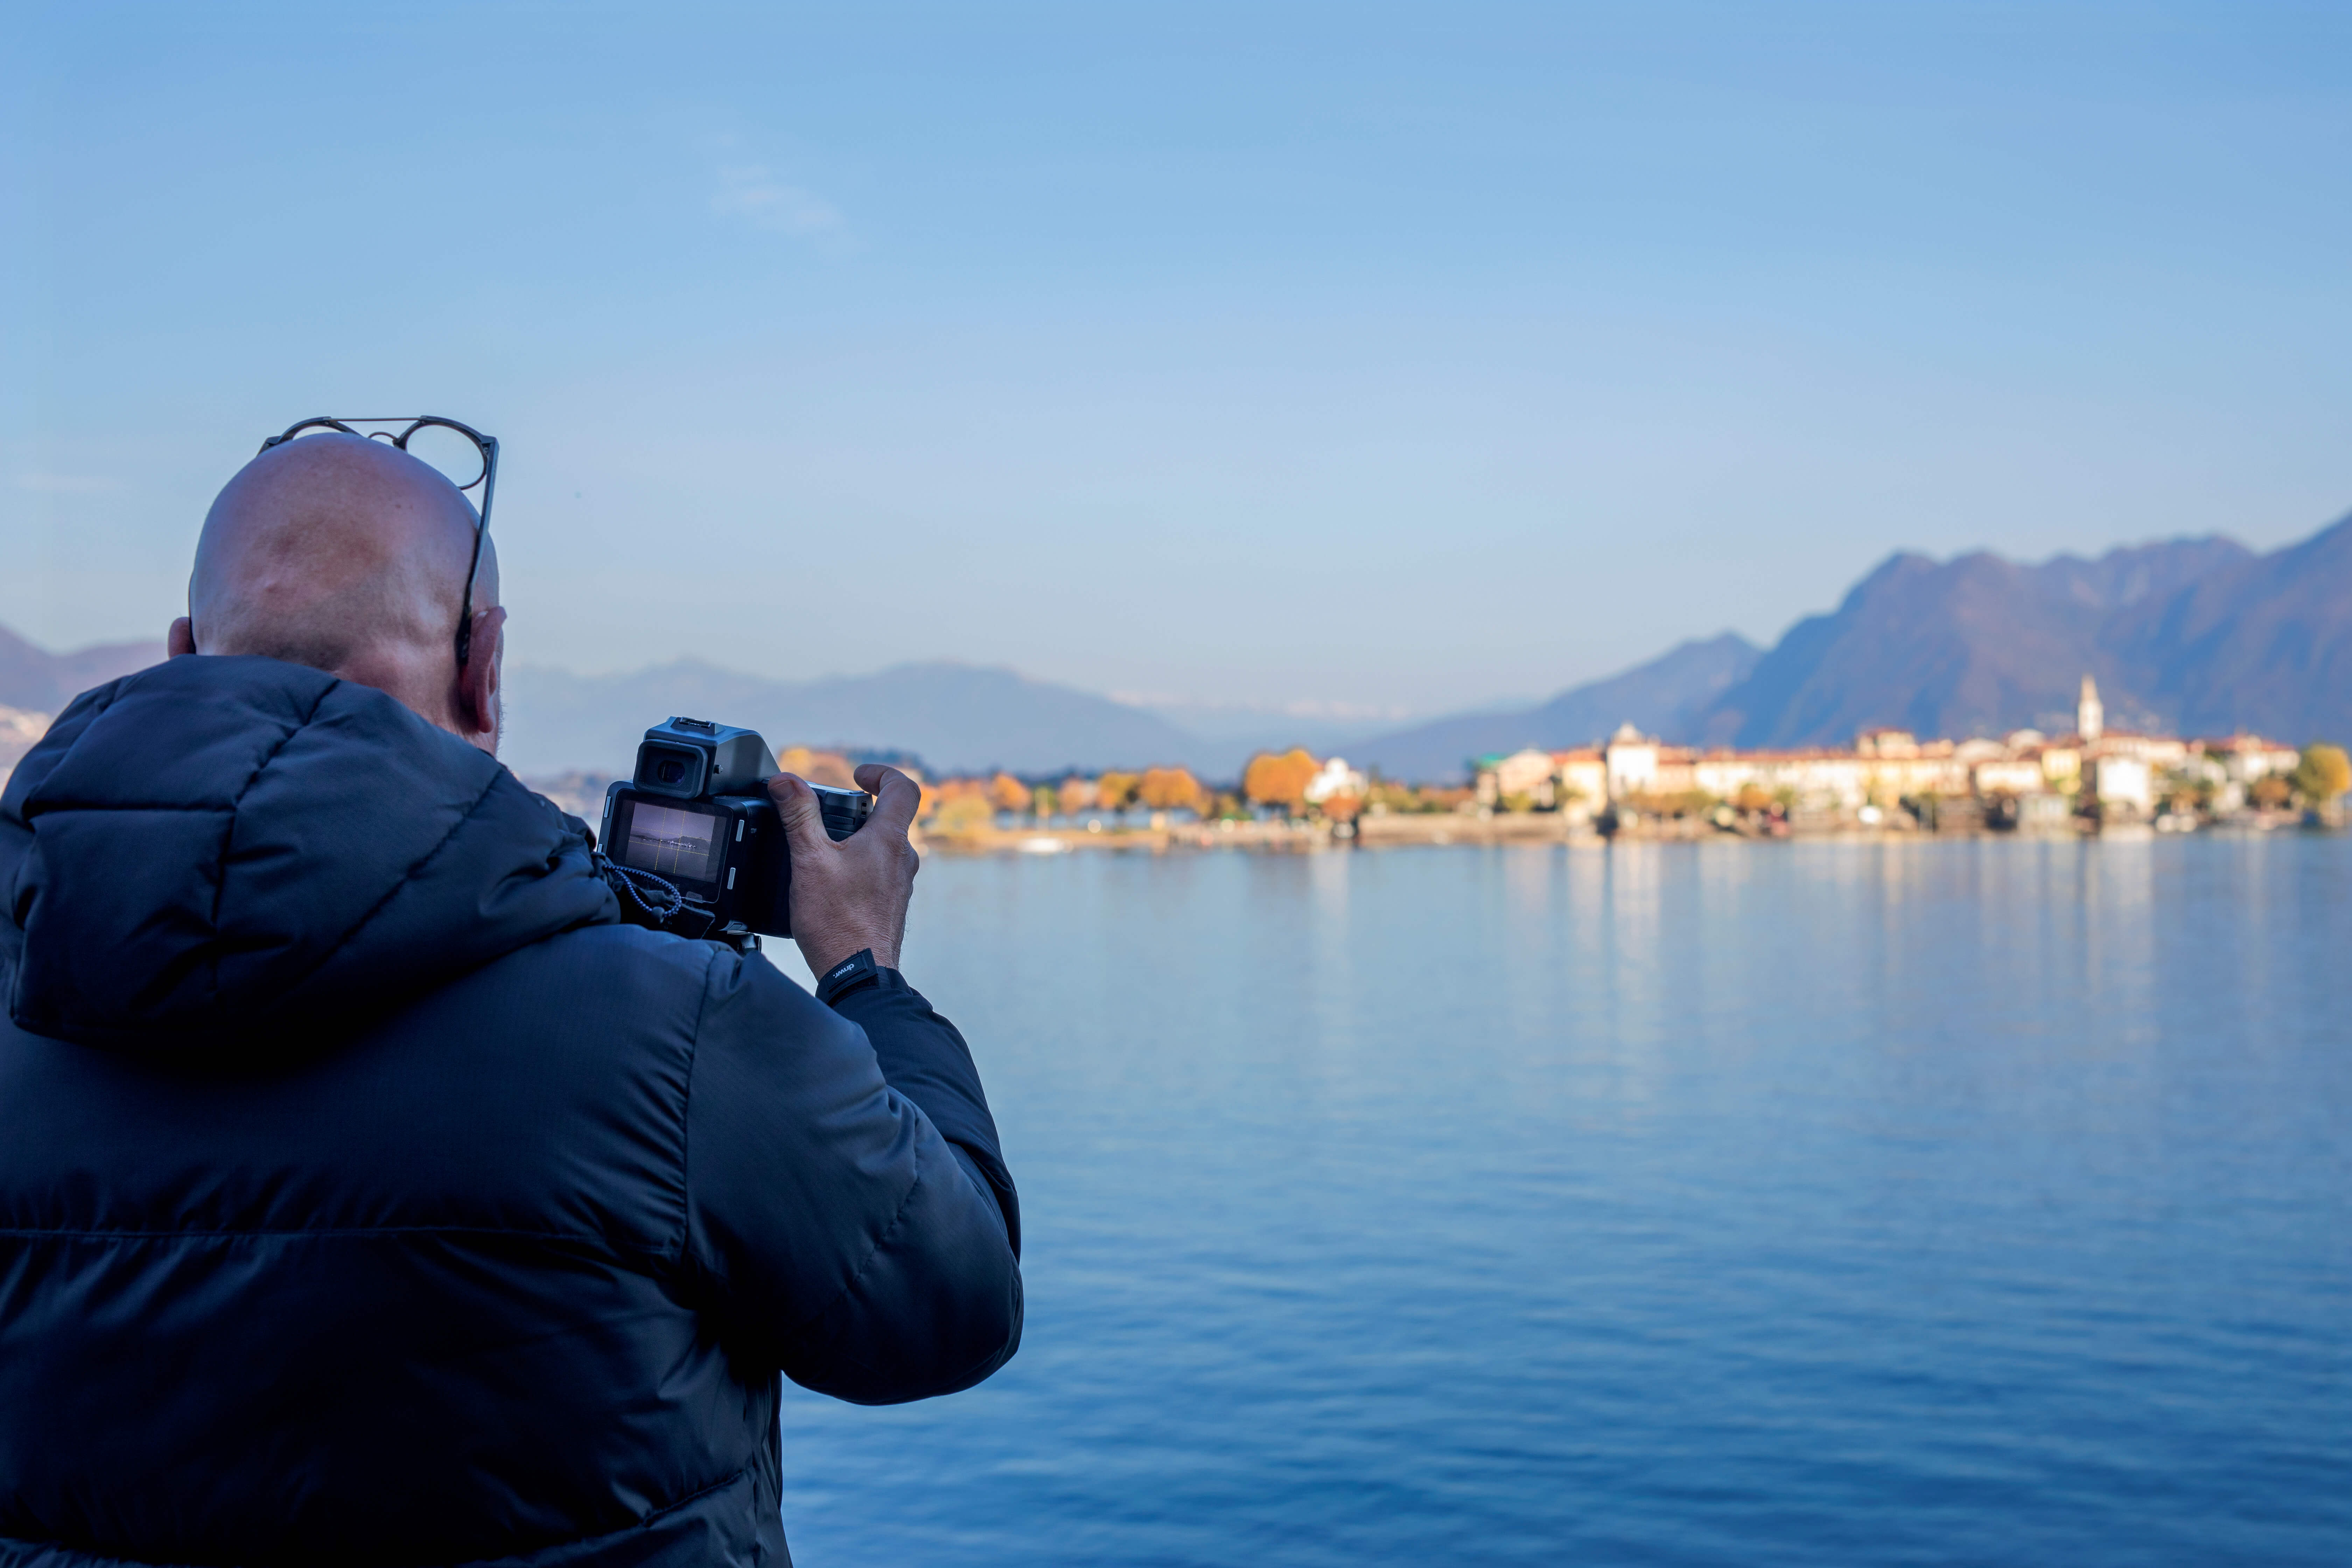 El fotógrafo en el lago Maggiore capturando una instantánea de su región.